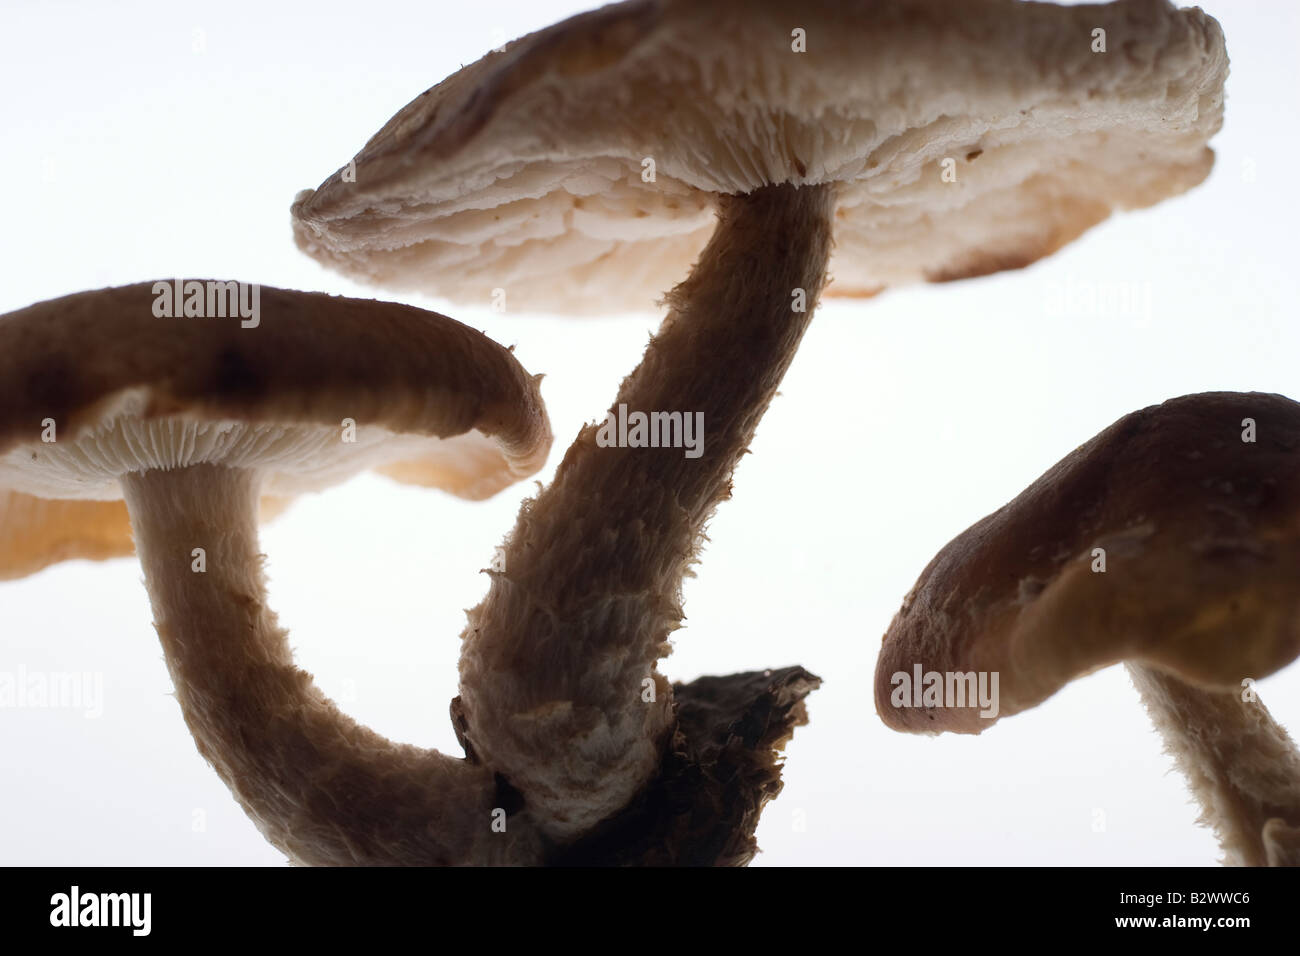 Gros plan de trois champignons shiitake dont le milieu de culture s'accroche encore à la base de la tige brute Banque D'Images